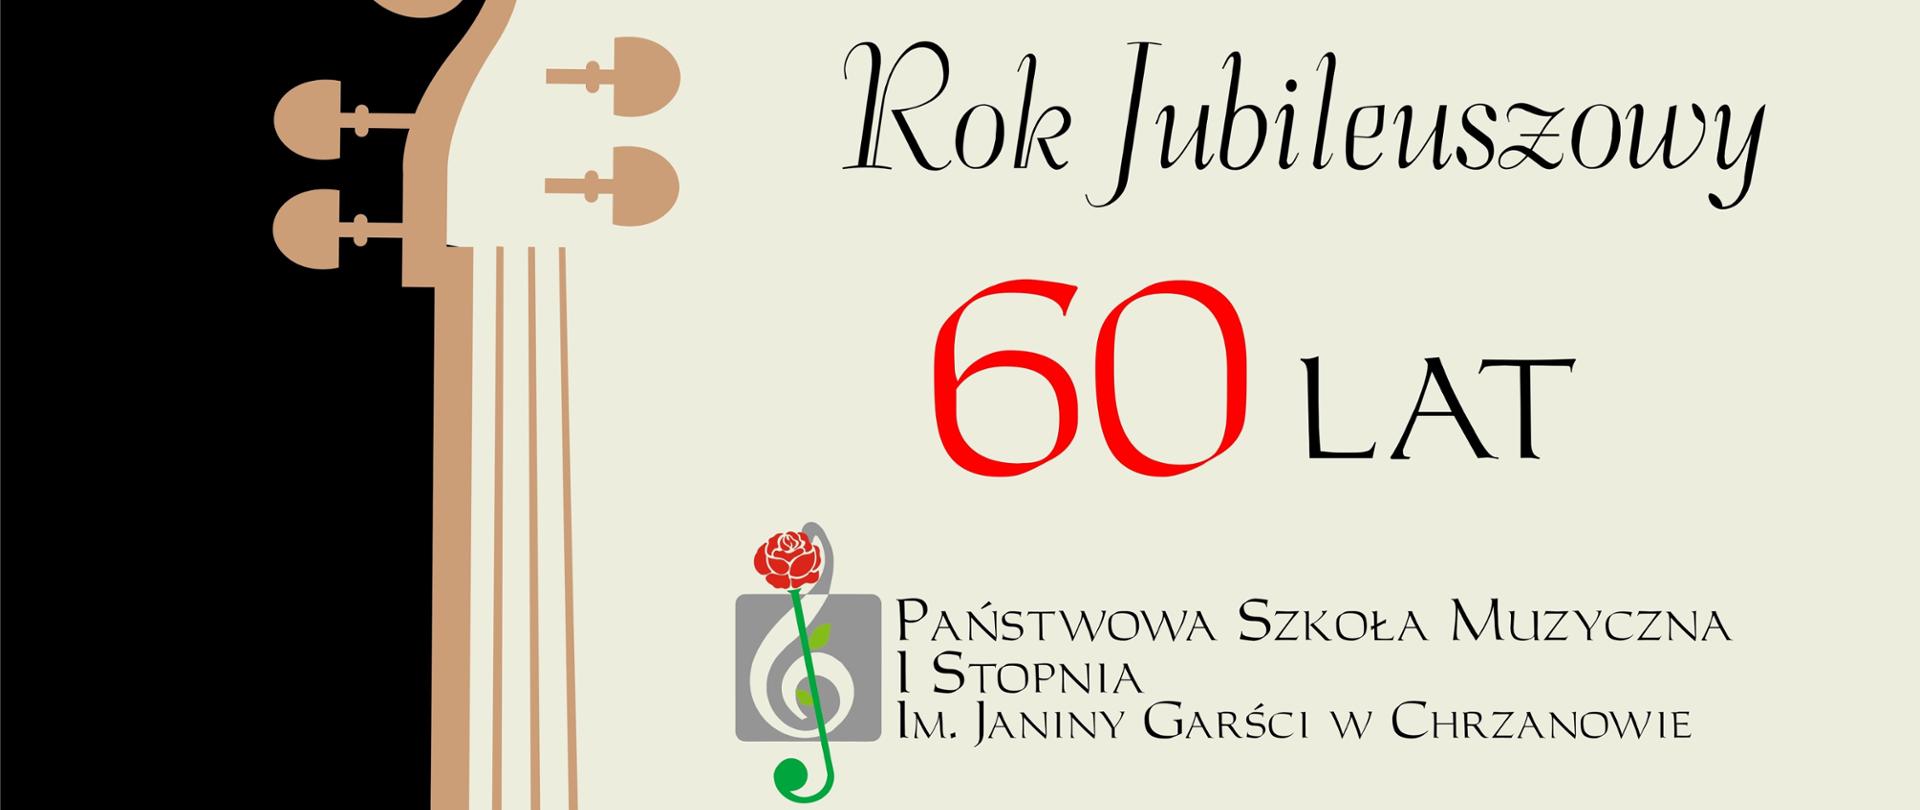 Afisz informujący o wszystkich wydarzeniach koncertowych w ramach obchodu jubileuszu 60-lecia.